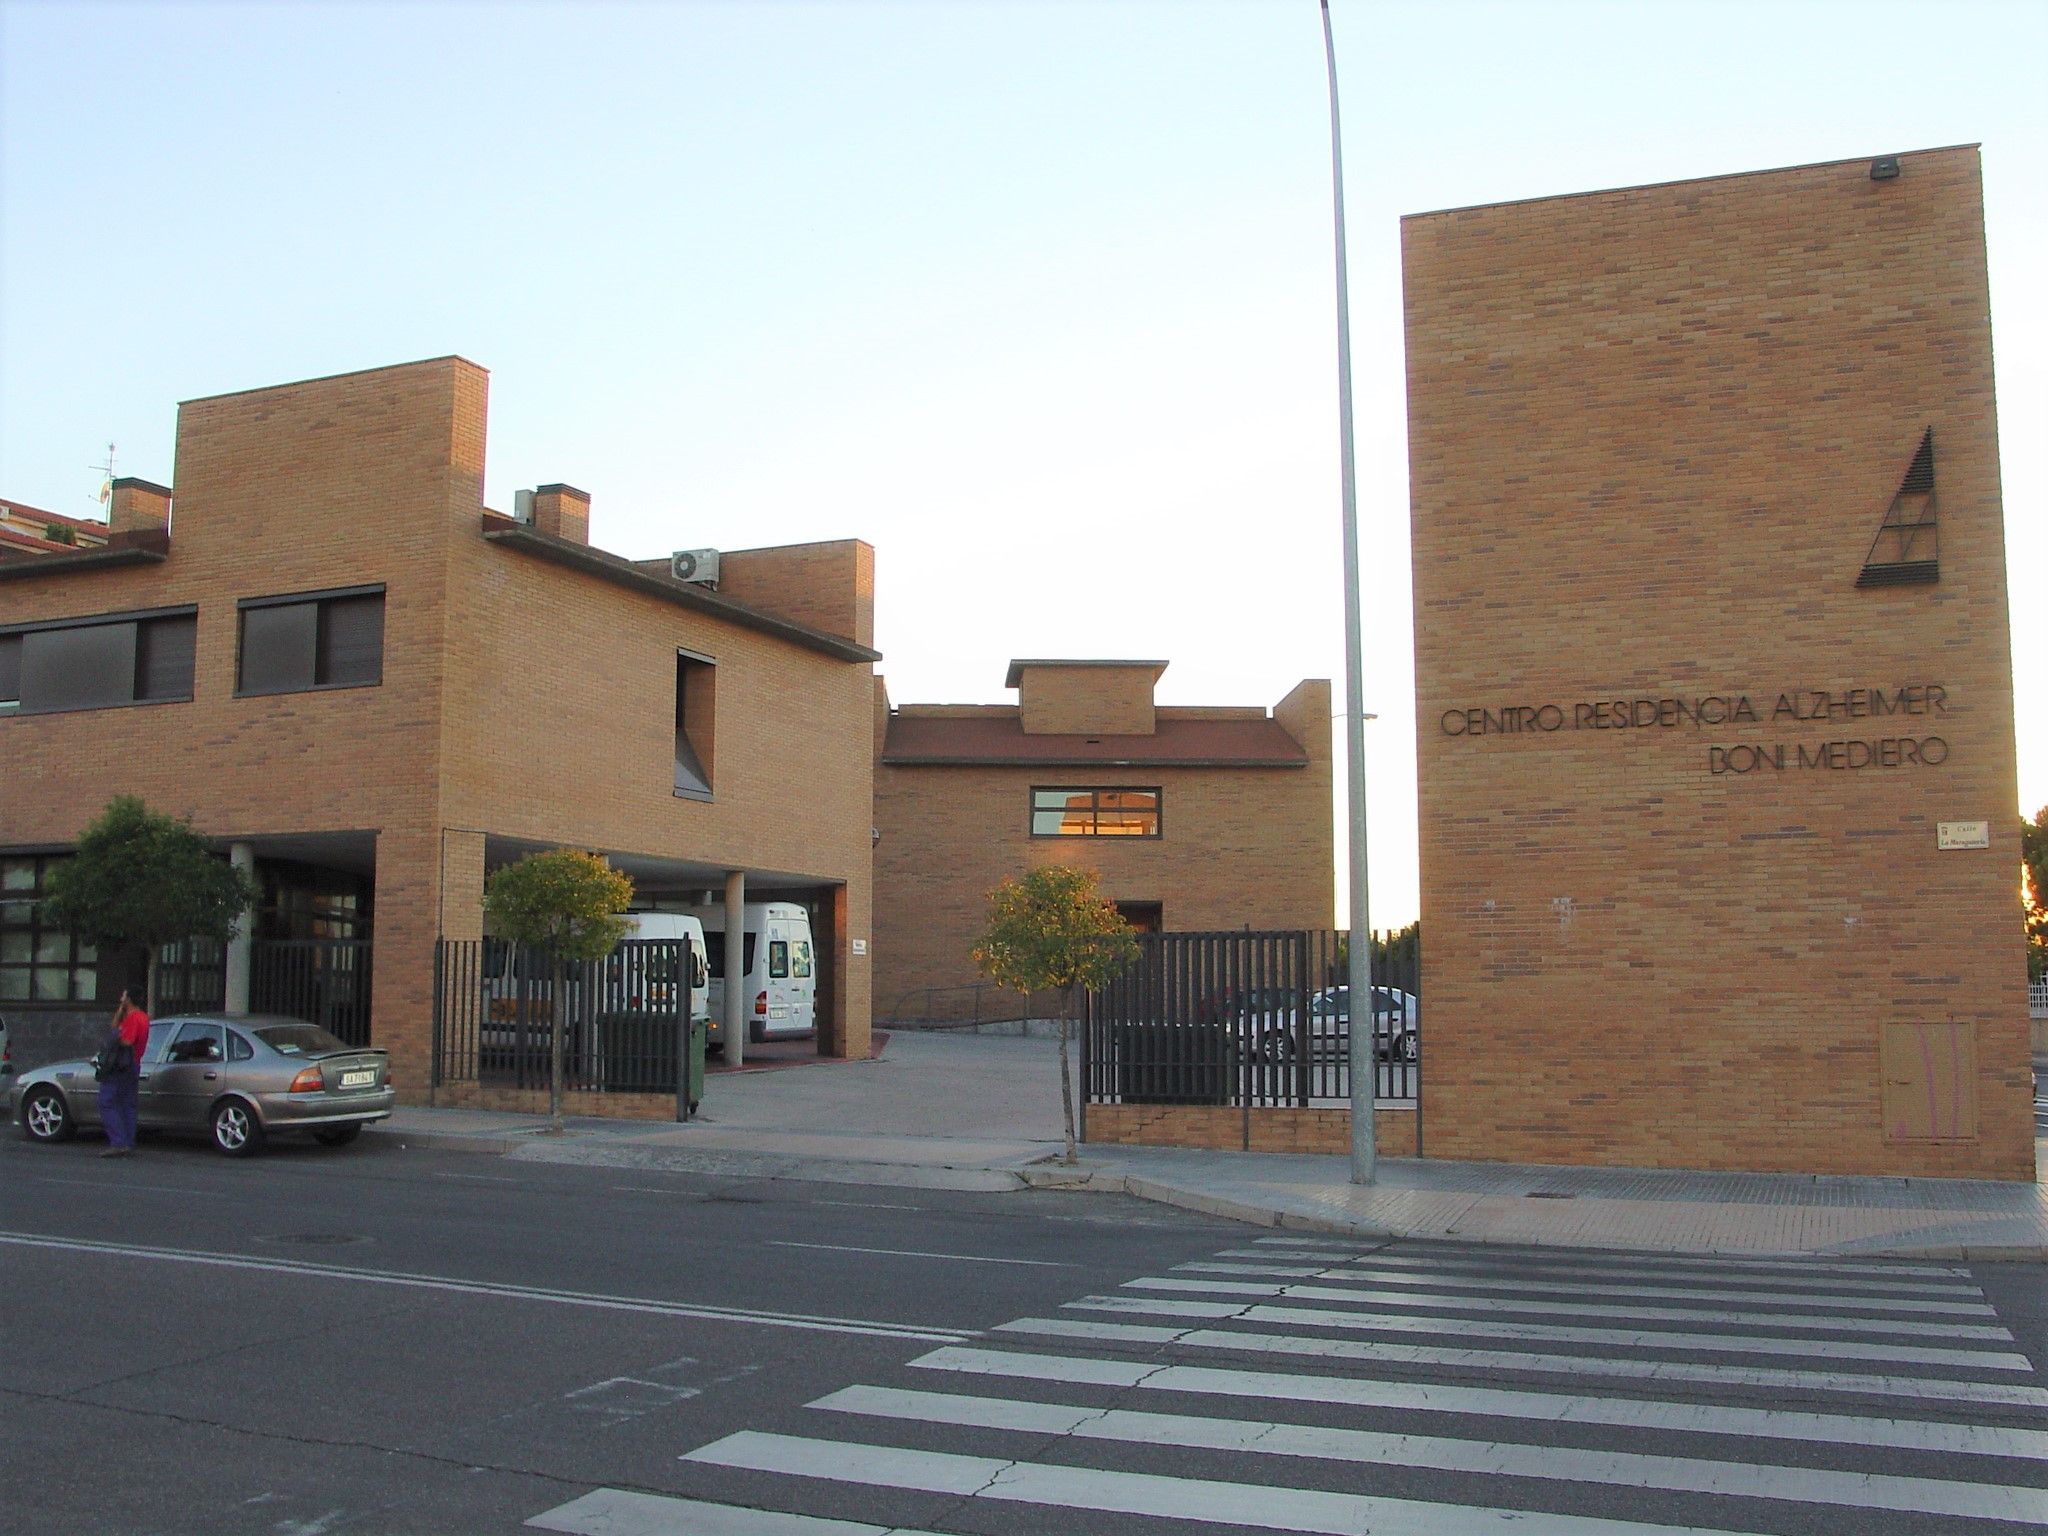 Centro Residencial Alzheimer Boni Mediero